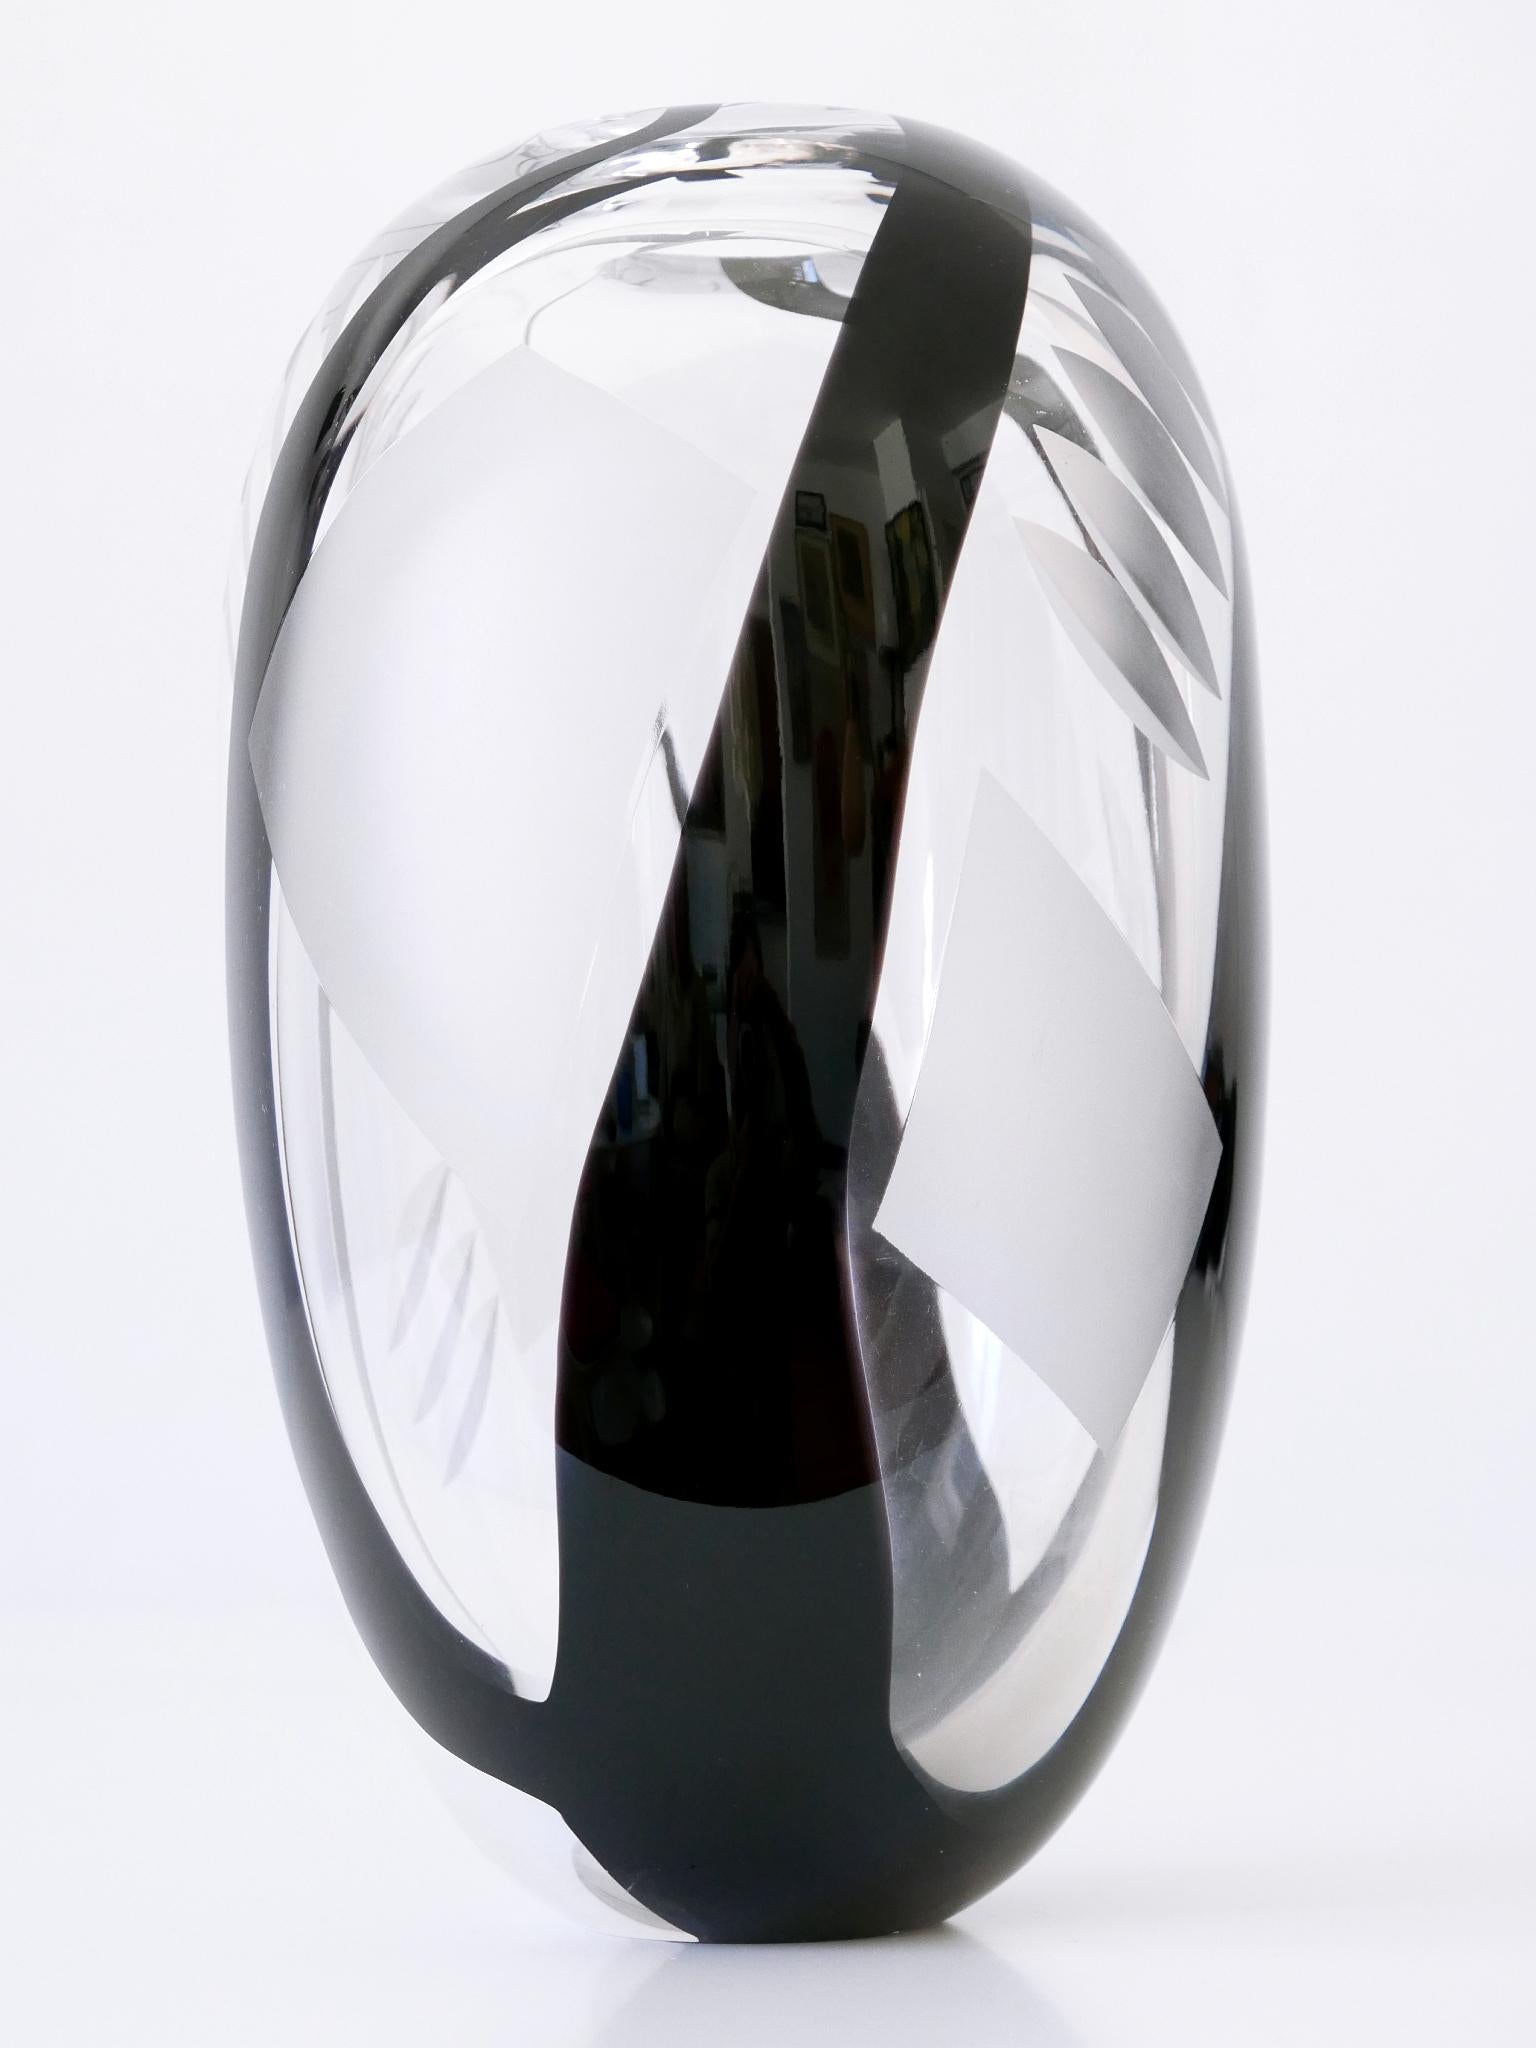 Unique Art Glass Vase by Anna Ehrer for Kosta Boda Sweden 1992 Signed For Sale 6